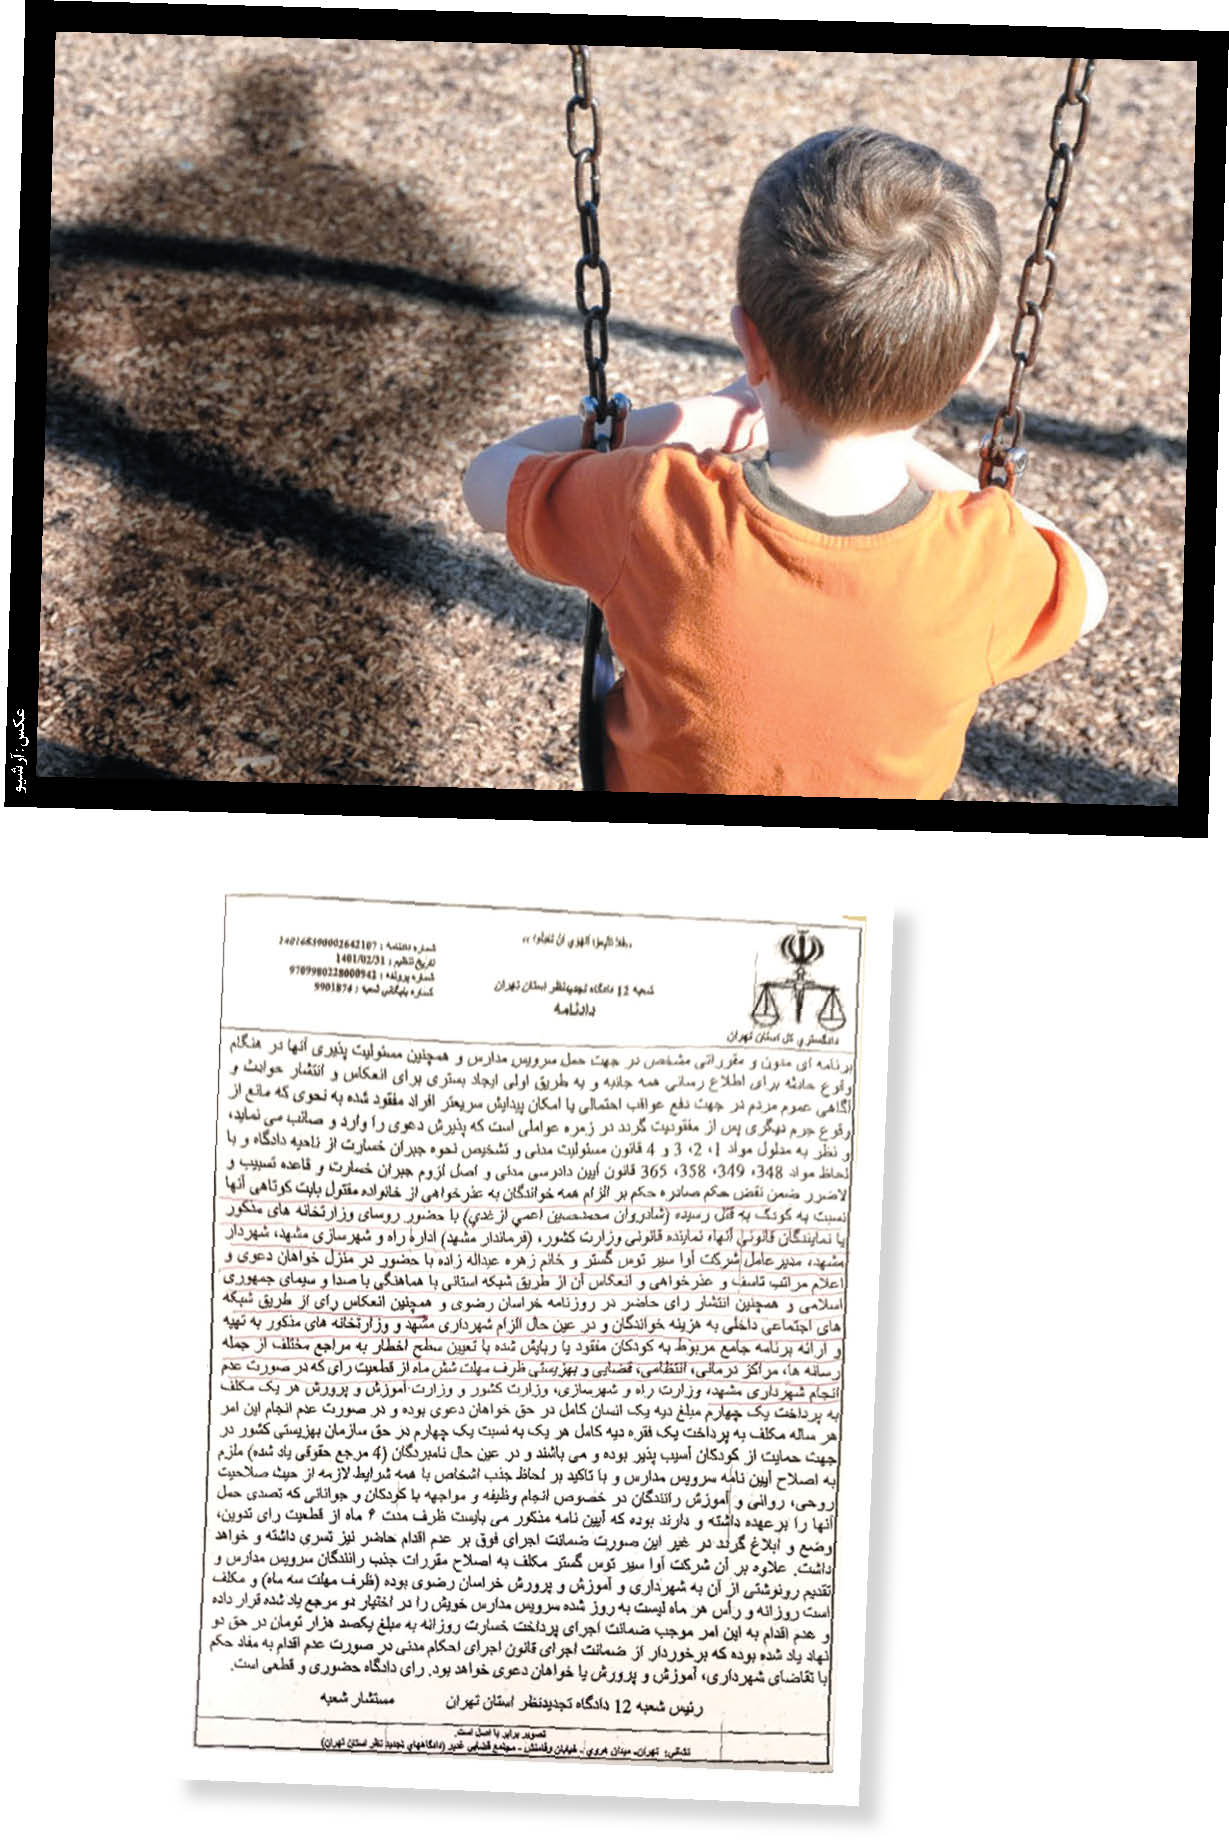 سامانه هشدار کودک ربایی در پستوی فراموشی؟ عدم اجرای بخشی از حکم «قاتل مارمولک نشان»